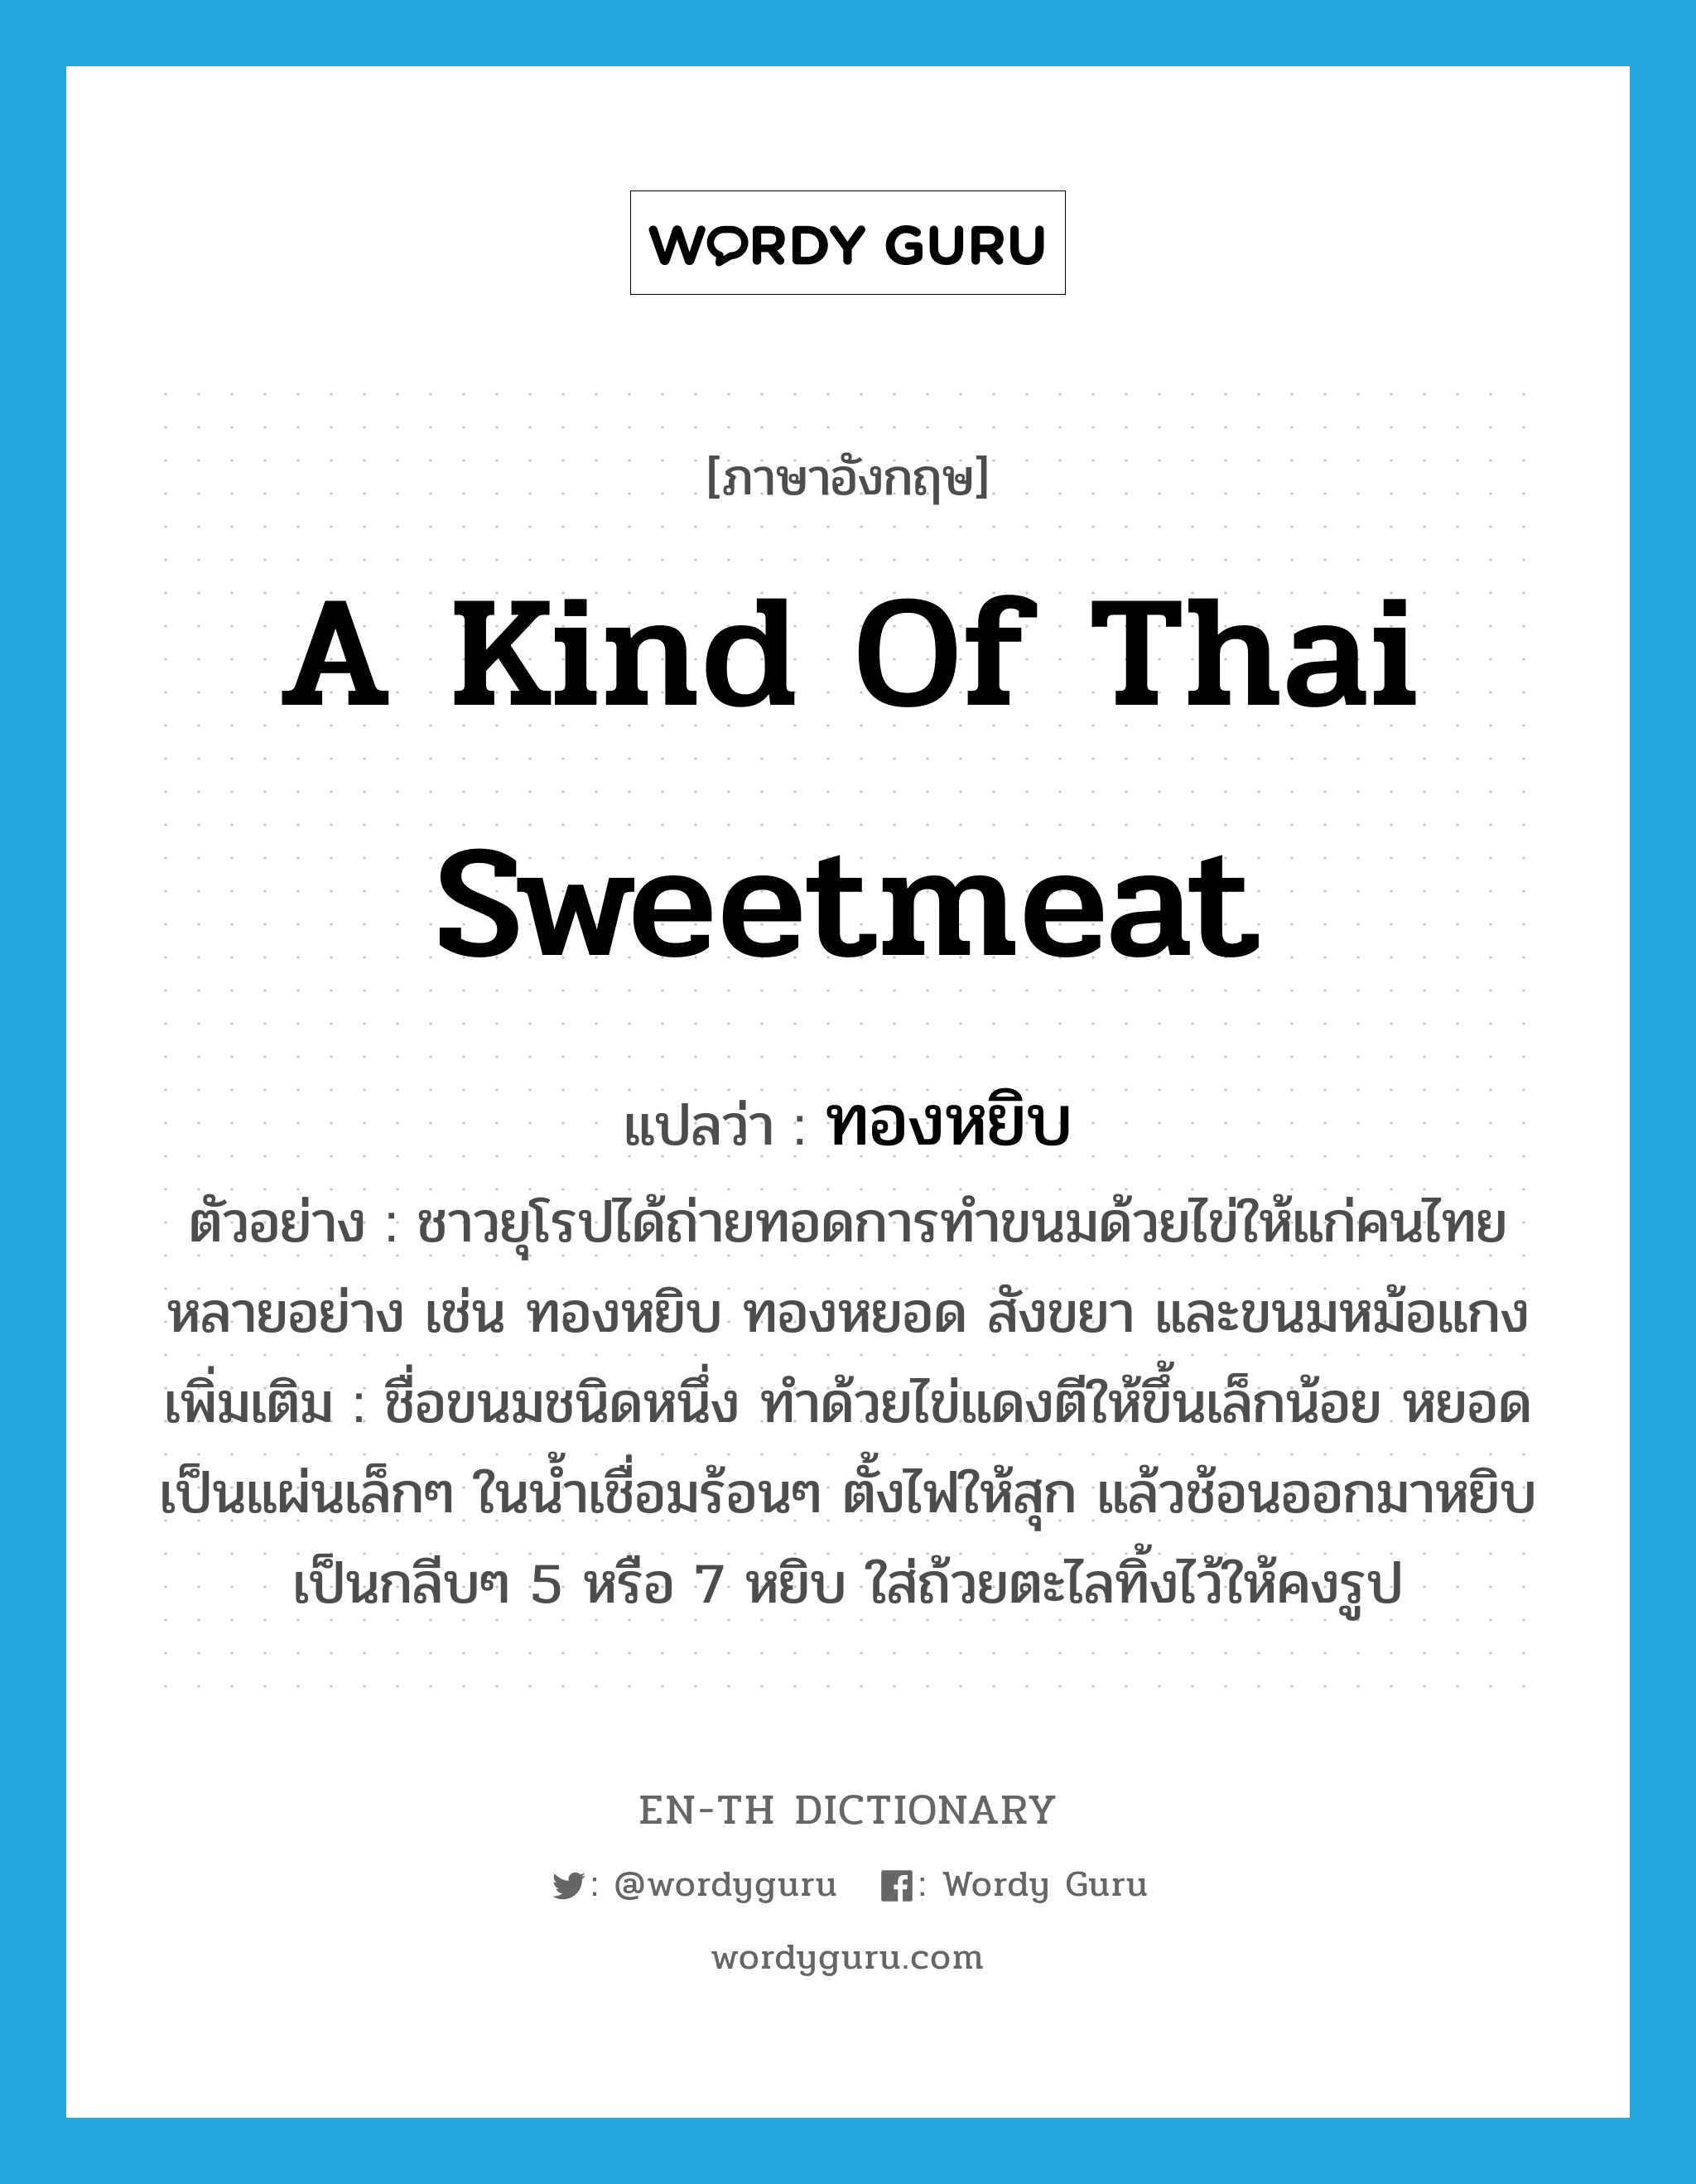 ทองหยิบ ภาษาอังกฤษ?, คำศัพท์ภาษาอังกฤษ ทองหยิบ แปลว่า a kind of Thai sweetmeat ประเภท N ตัวอย่าง ชาวยุโรปได้ถ่ายทอดการทำขนมด้วยไข่ให้แก่คนไทยหลายอย่าง เช่น ทองหยิบ ทองหยอด สังขยา และขนมหม้อแกง เพิ่มเติม ชื่อขนมชนิดหนึ่ง ทำด้วยไข่แดงตีให้ขึ้นเล็กน้อย หยอดเป็นแผ่นเล็กๆ ในน้ำเชื่อมร้อนๆ ตั้งไฟให้สุก แล้วช้อนออกมาหยิบเป็นกลีบๆ 5 หรือ 7 หยิบ ใส่ถ้วยตะไลทิ้งไว้ให้คงรูป หมวด N